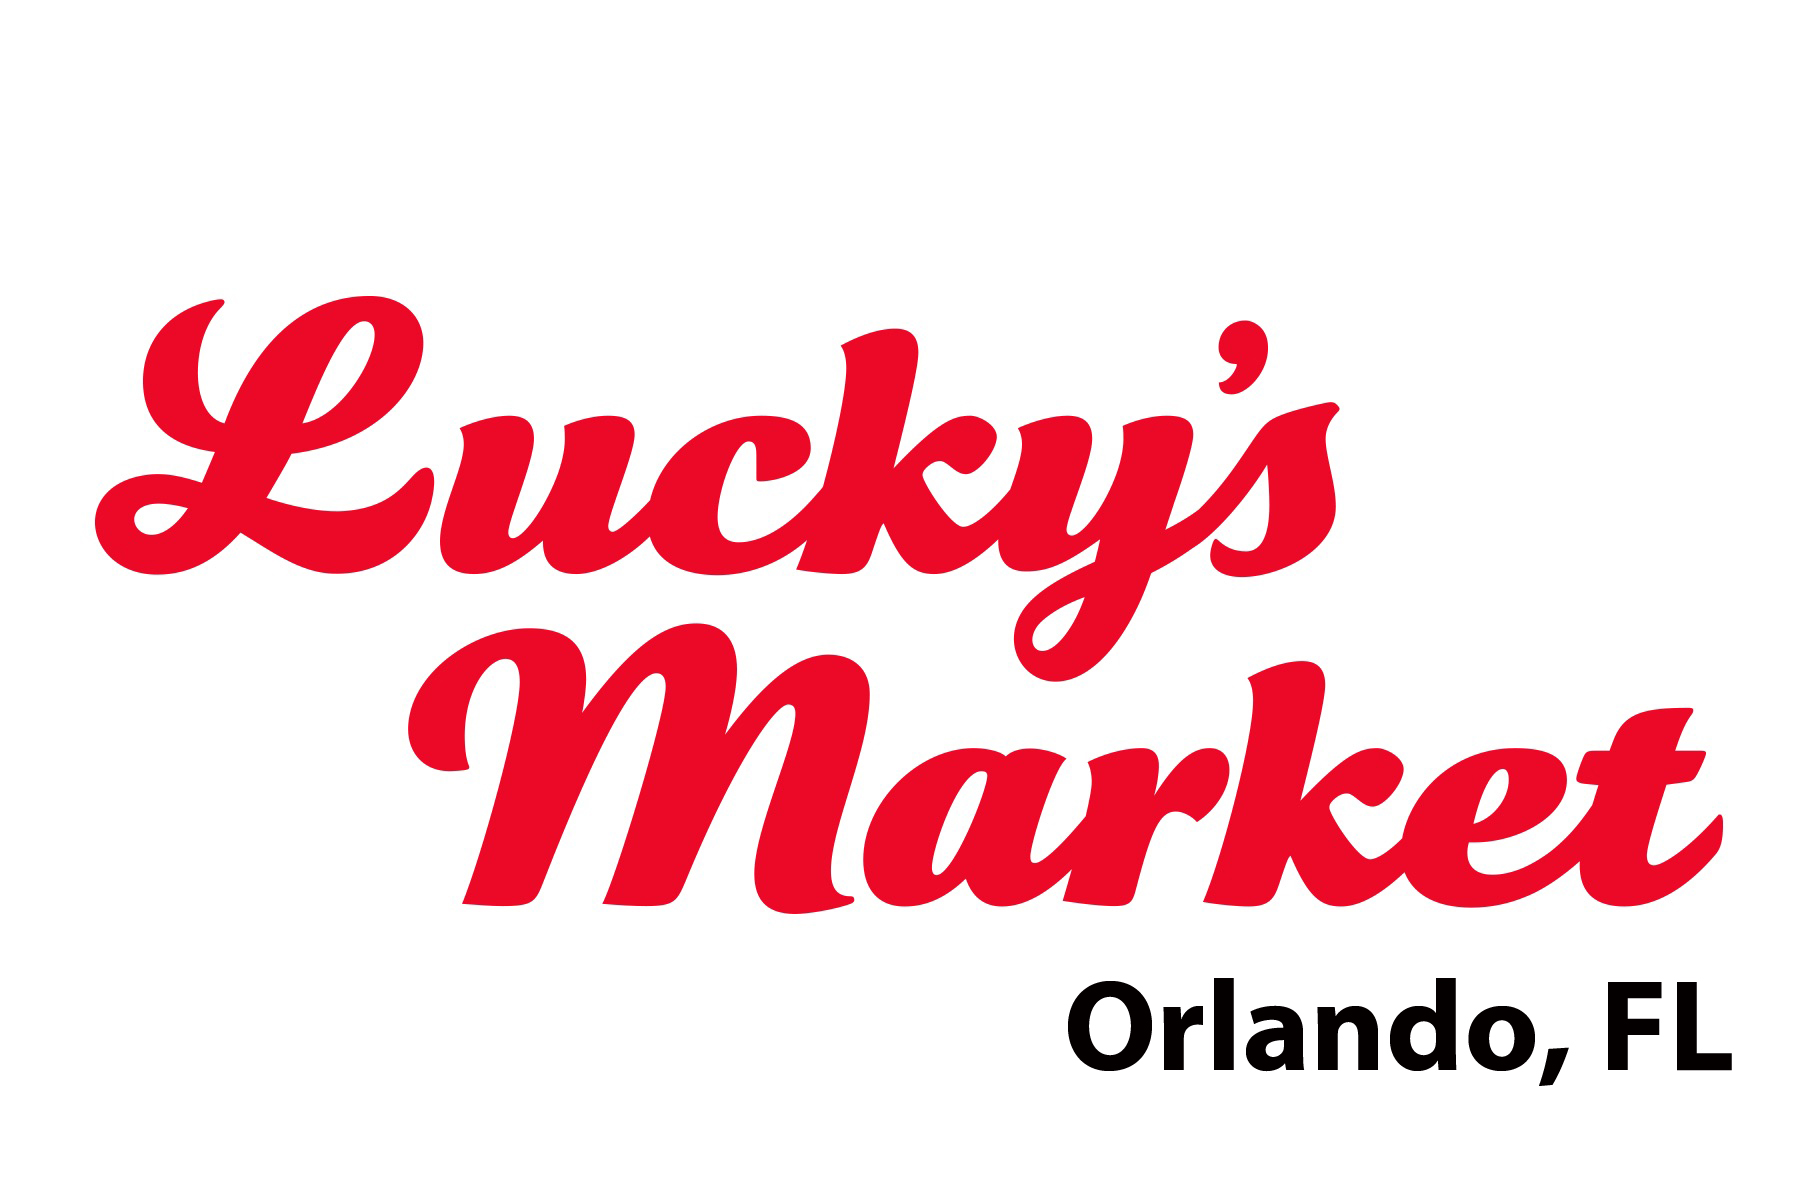 Orlando, FL - Lucky's Market